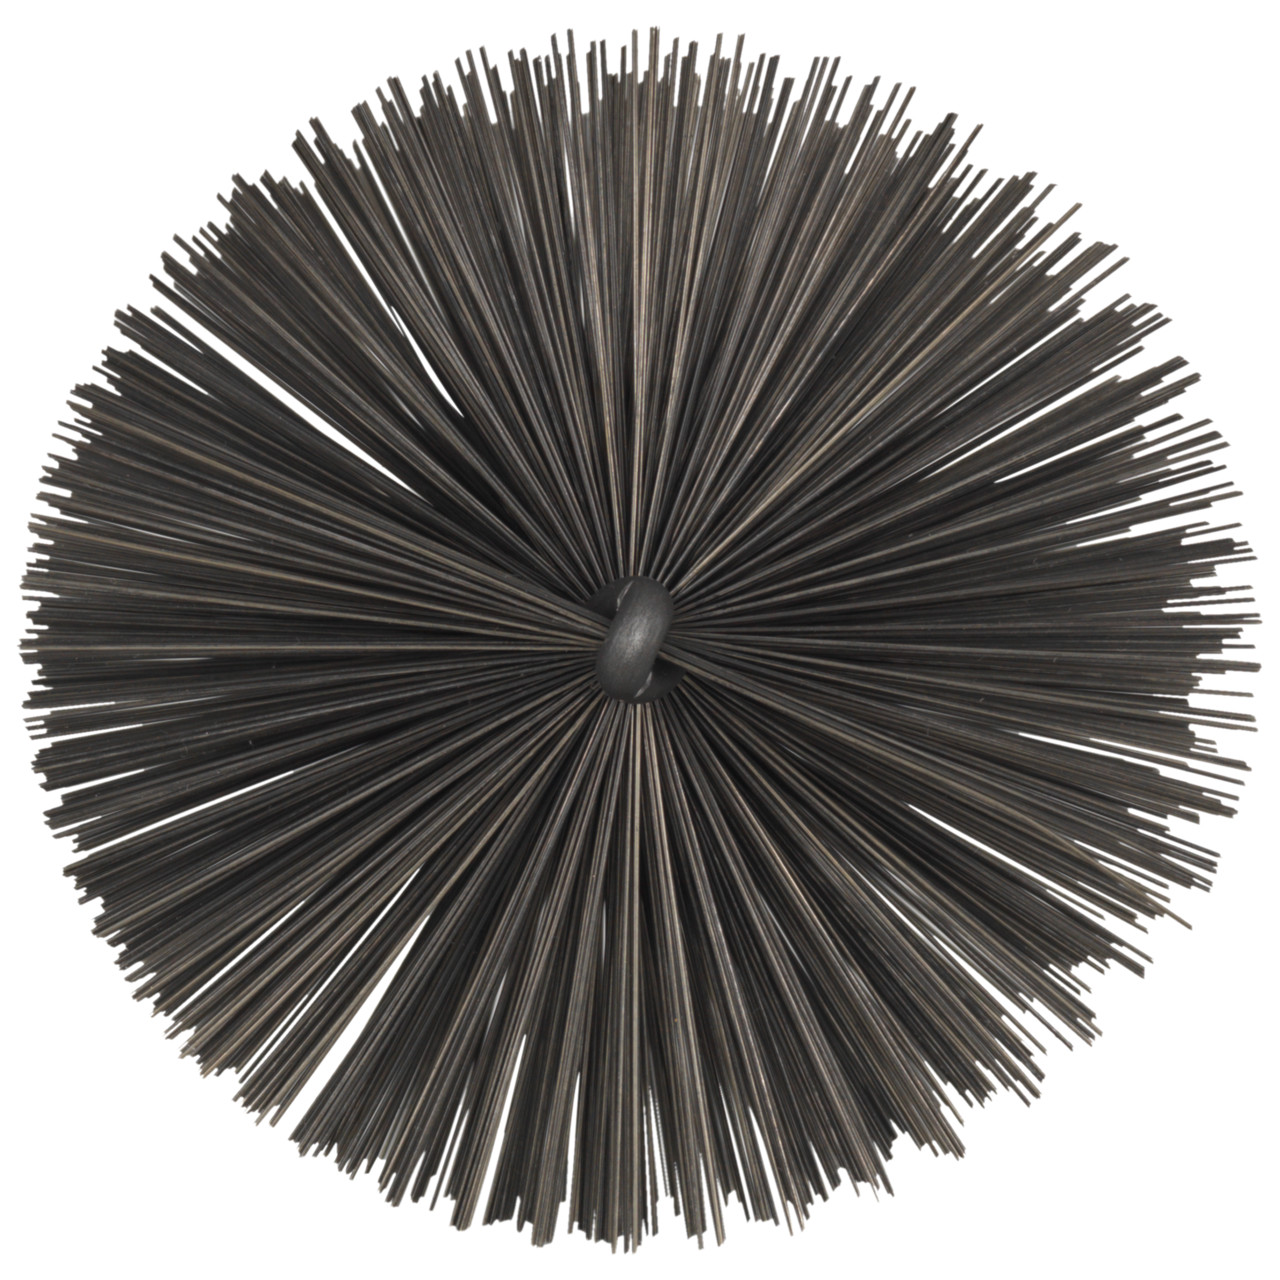 Scovolo Tyrolit con filettatura esterna DxGE-I 75xW1/2-160 Per acciaio, forma: 18ROGDG - (scovolo), Art. 34203607